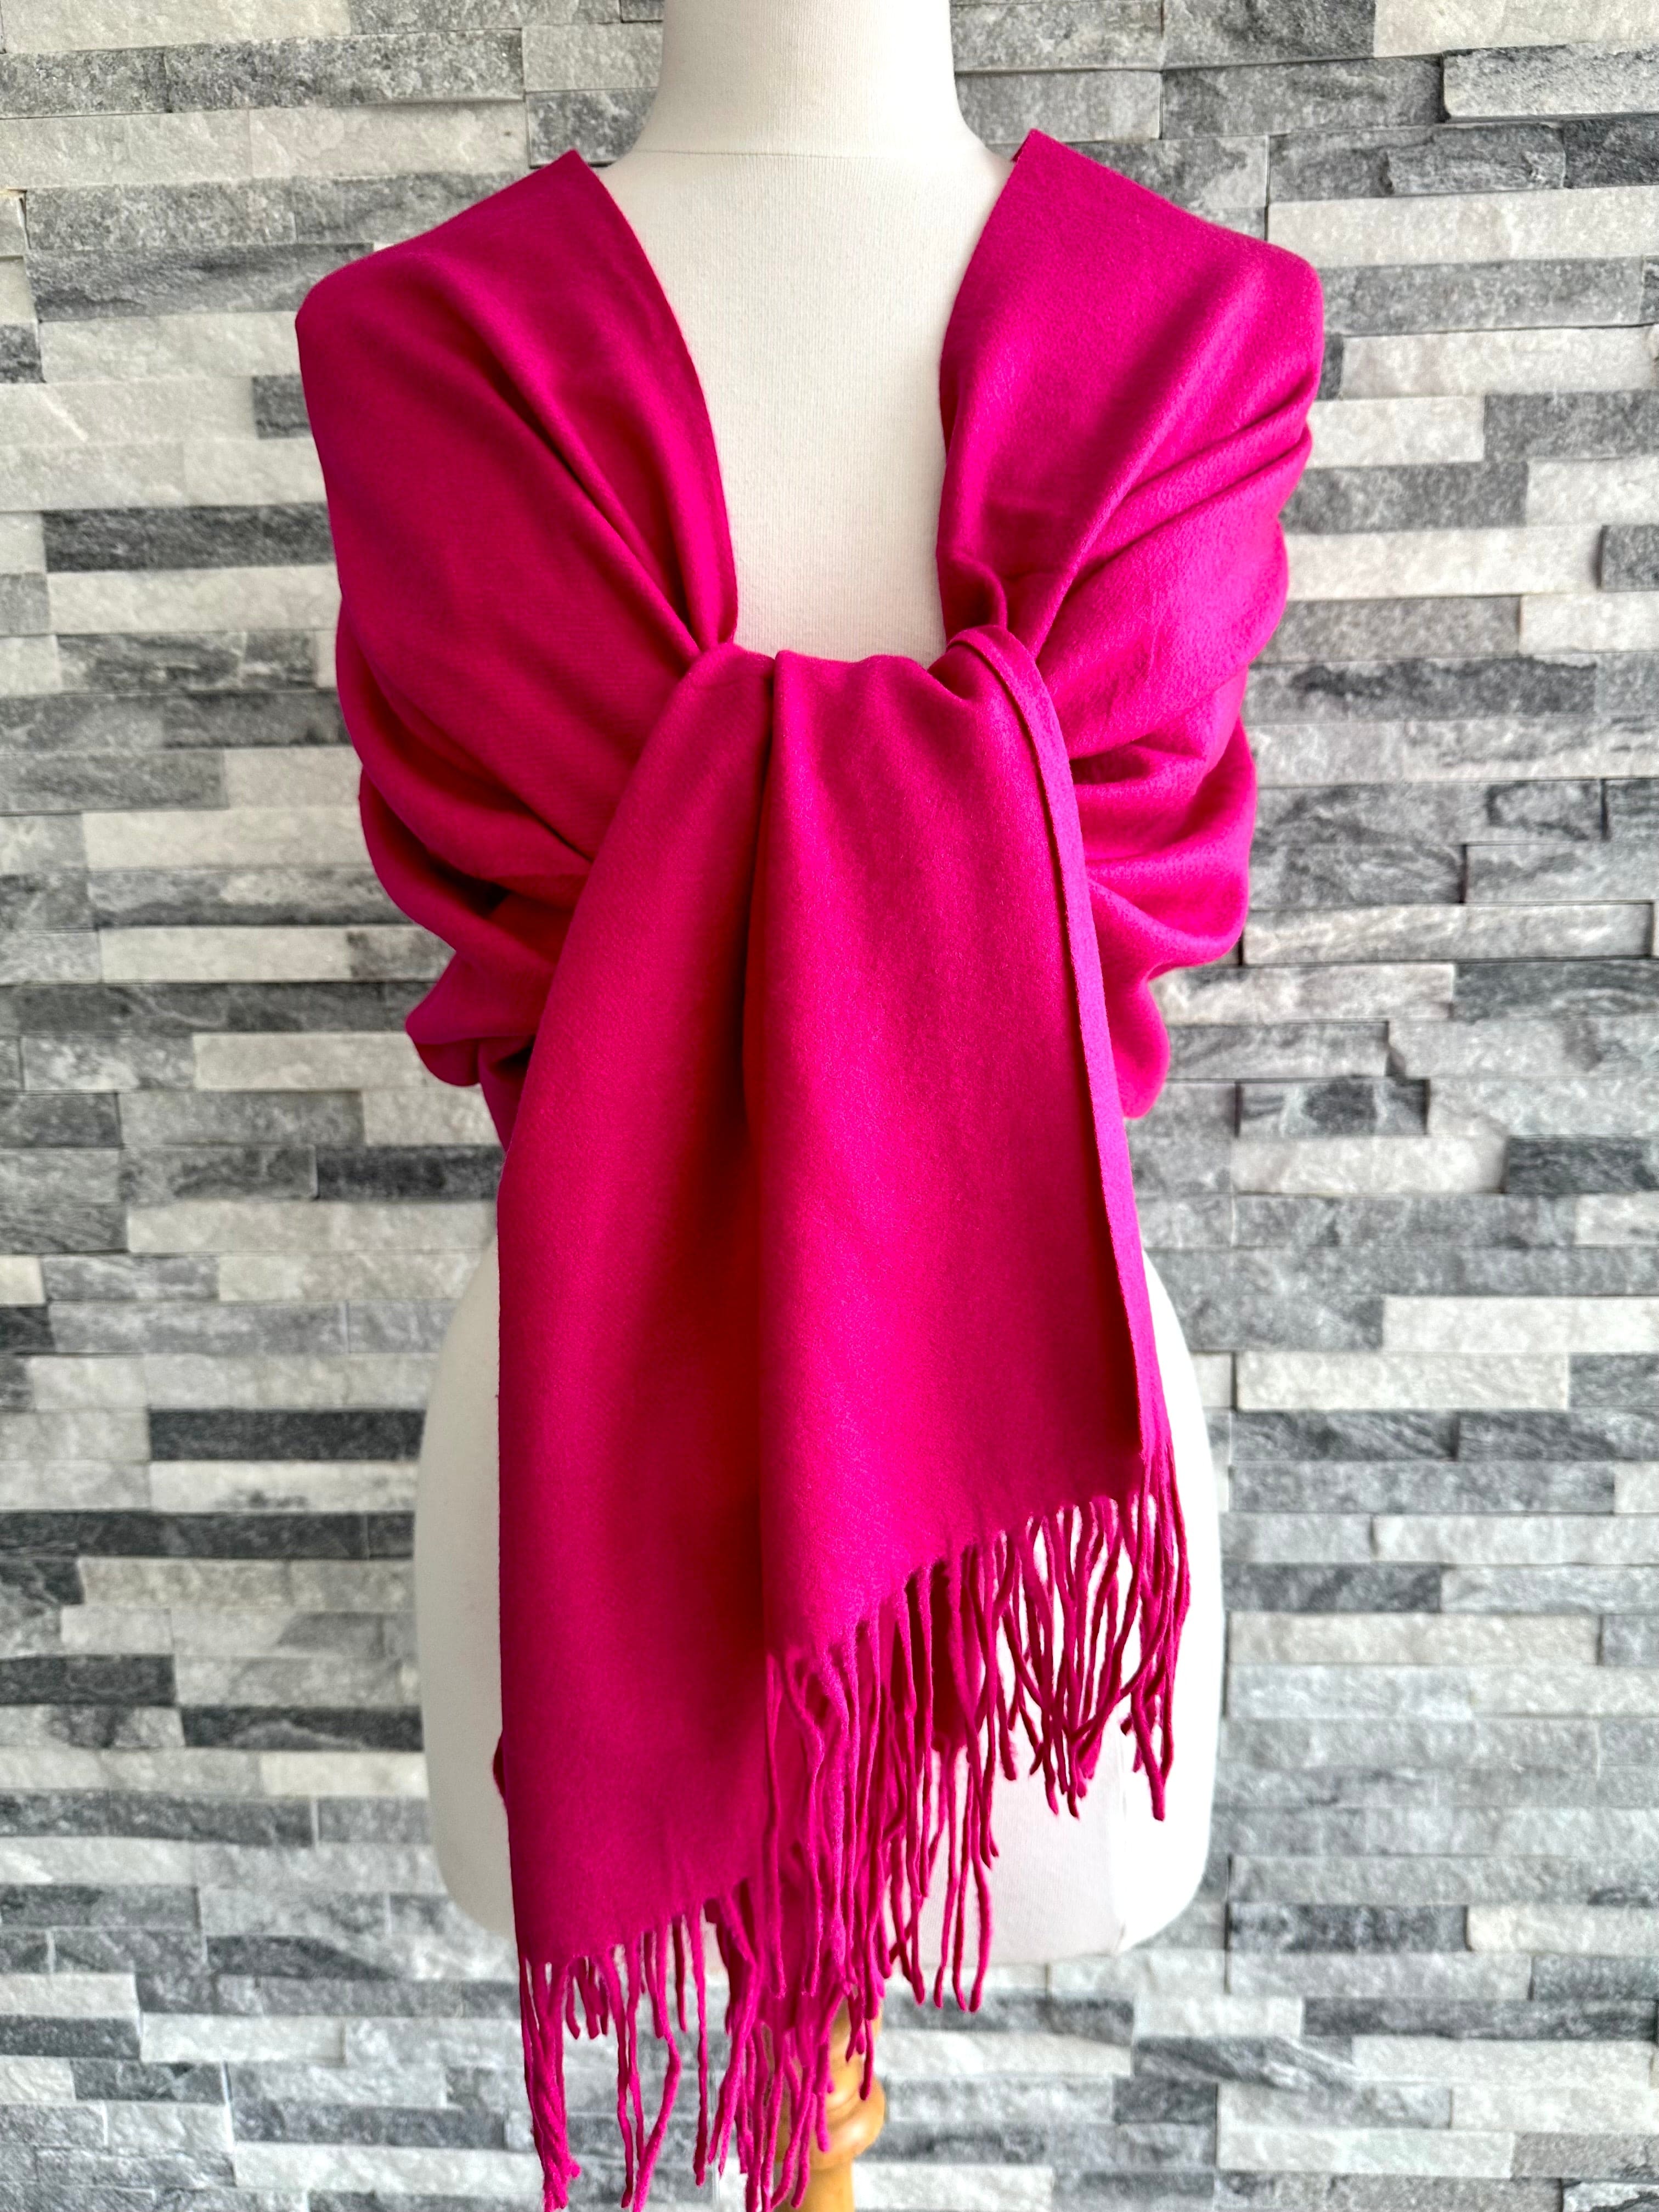 lusciousscarves Scarves & Shawls Hot Pink Cashmere Blend Plain Pashmina Wrap